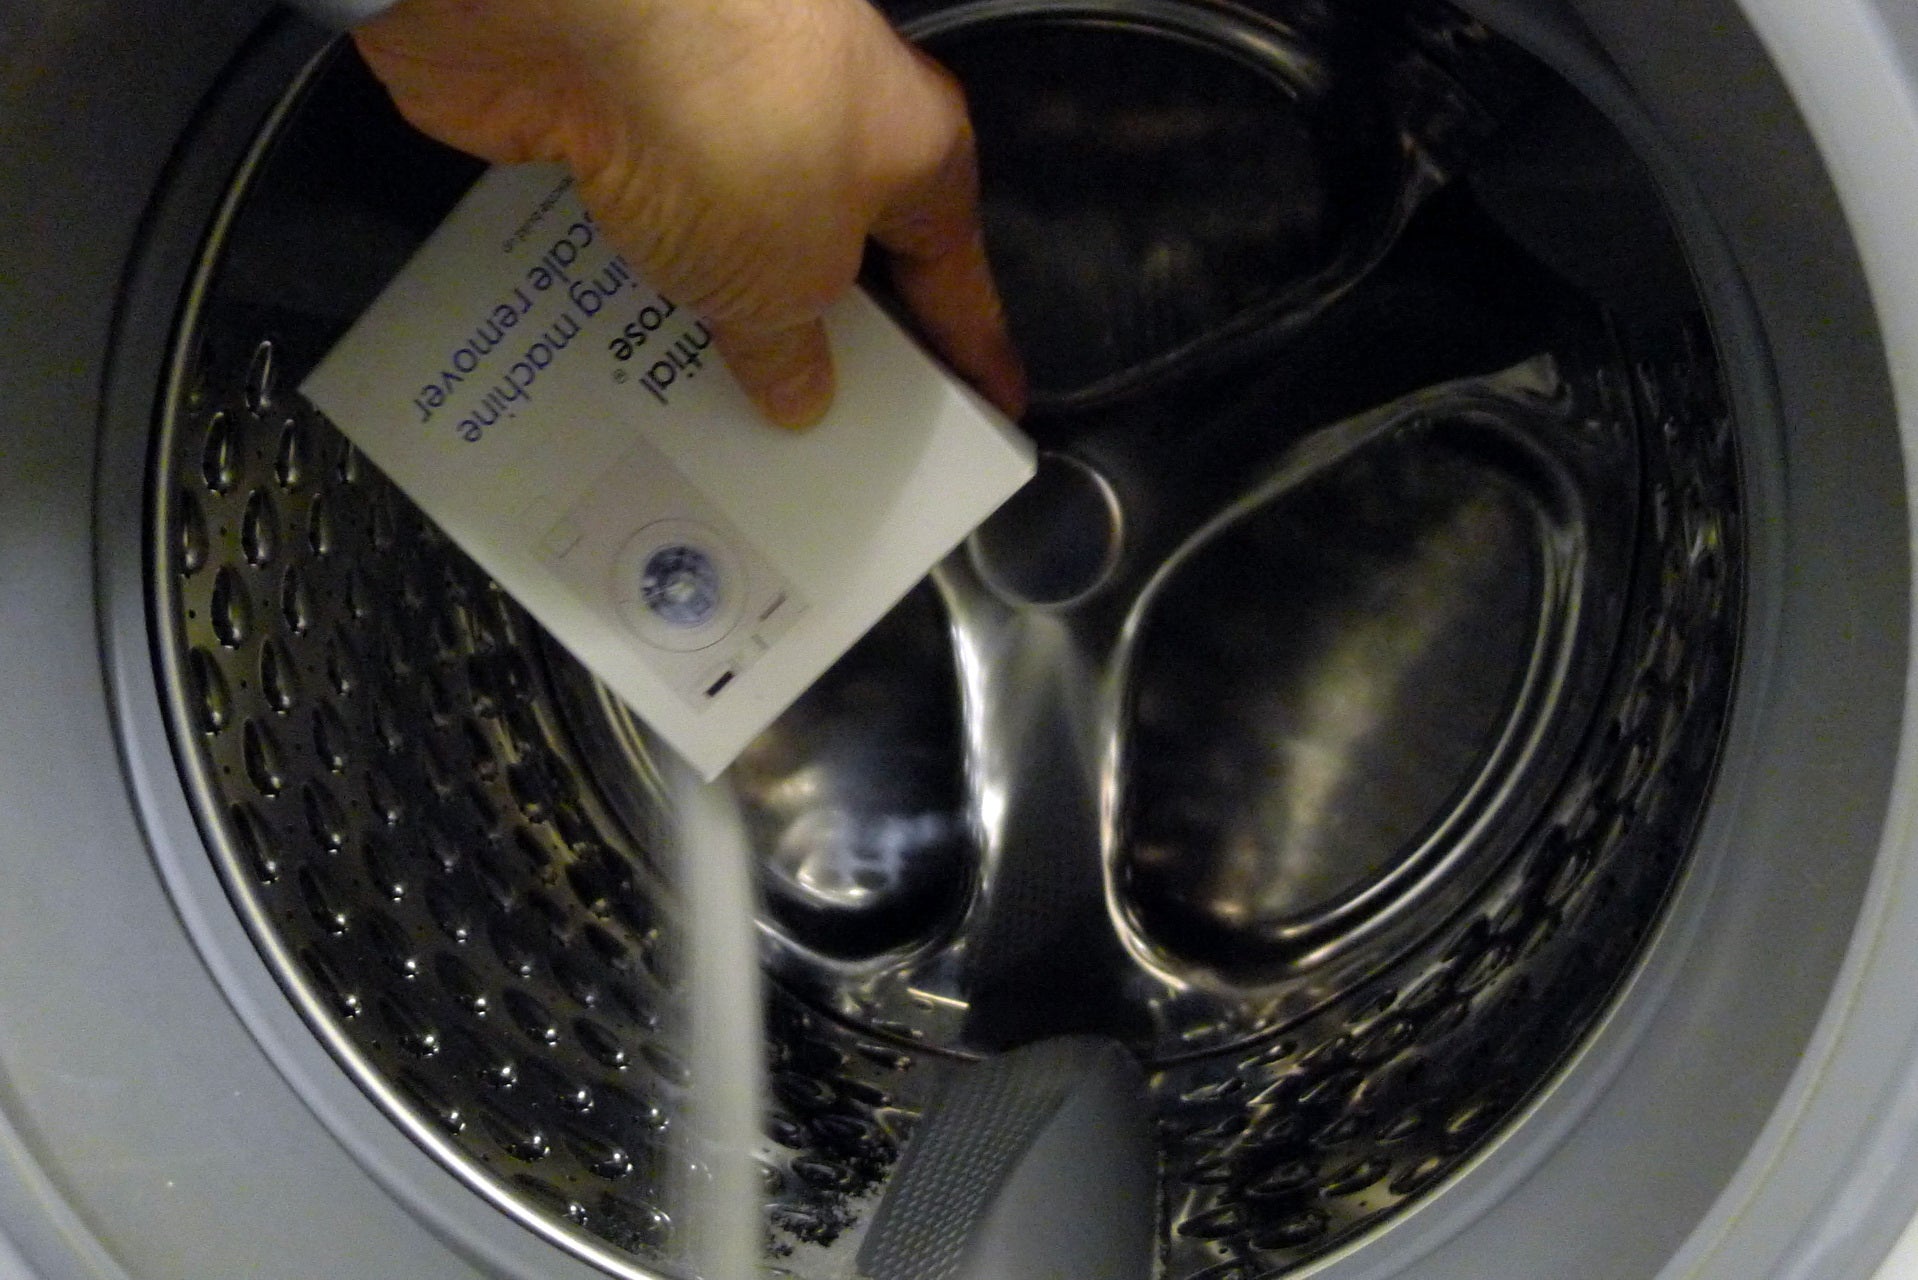 Adding descaler to a washing machine drum